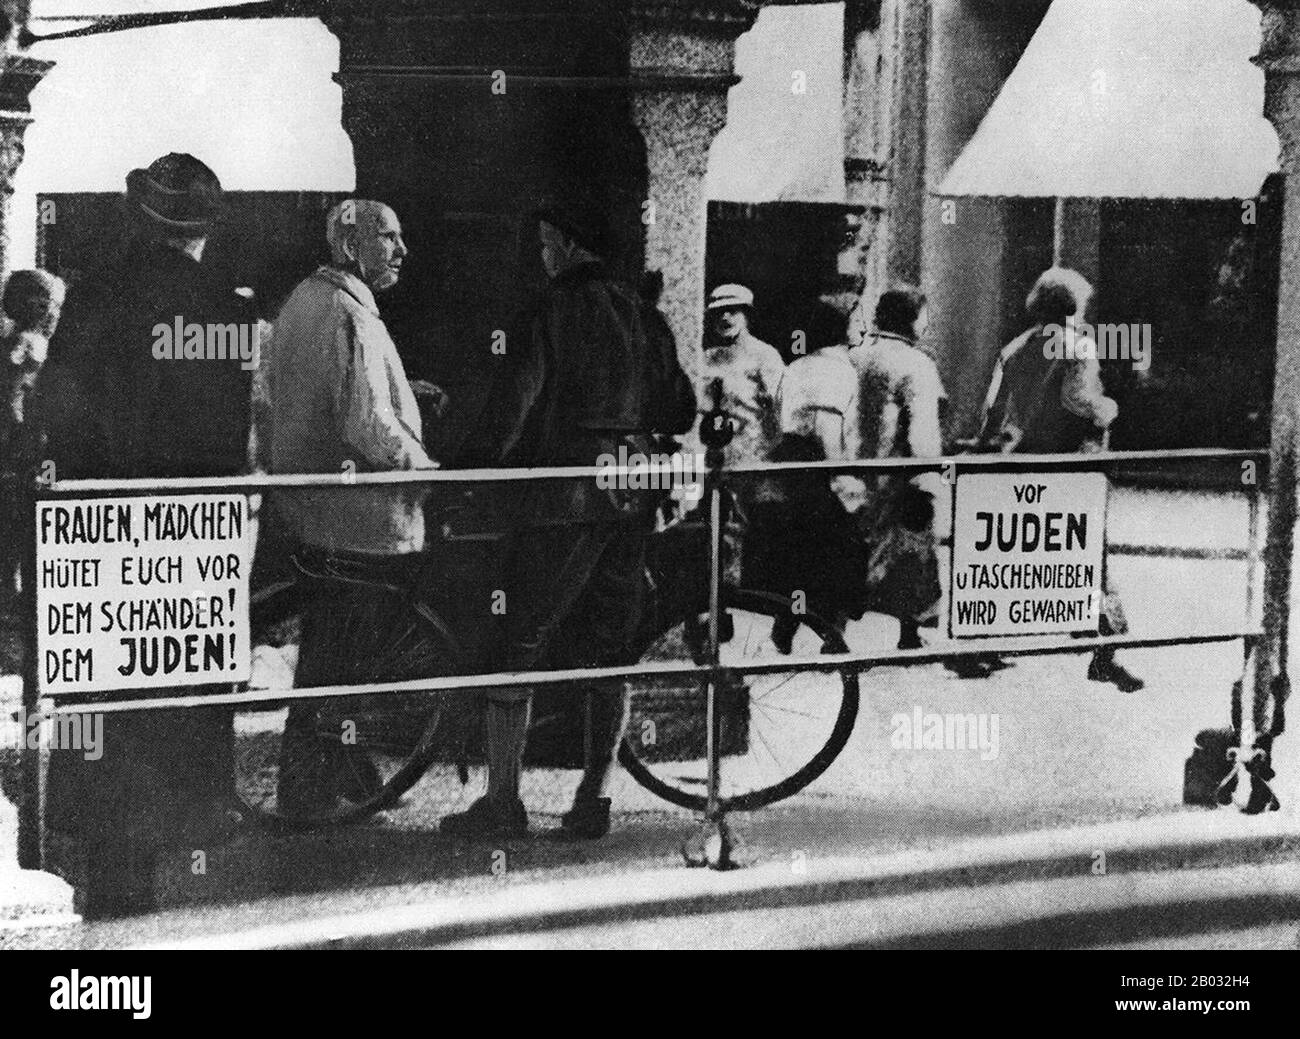 Kristallnacht o 'Crystal Night', chiamata anche Notte Del vetro Rotto, era un pogrom contro gli ebrei in tutta la Germania nazista e l'Austria che si svolse il 9-10 novembre 1938, eseguito da forze paramilitari di SA e civili tedeschi. Le autorità tedesche si sono esaminate senza intervenire. Il nome Kristallnacht deriva dalle barbe di vetro rotto che costellavano le strade dopo che i negozi, gli edifici e le sinagoghe di proprietà ebraica avevano le loro finestre schiacciate. Foto Stock